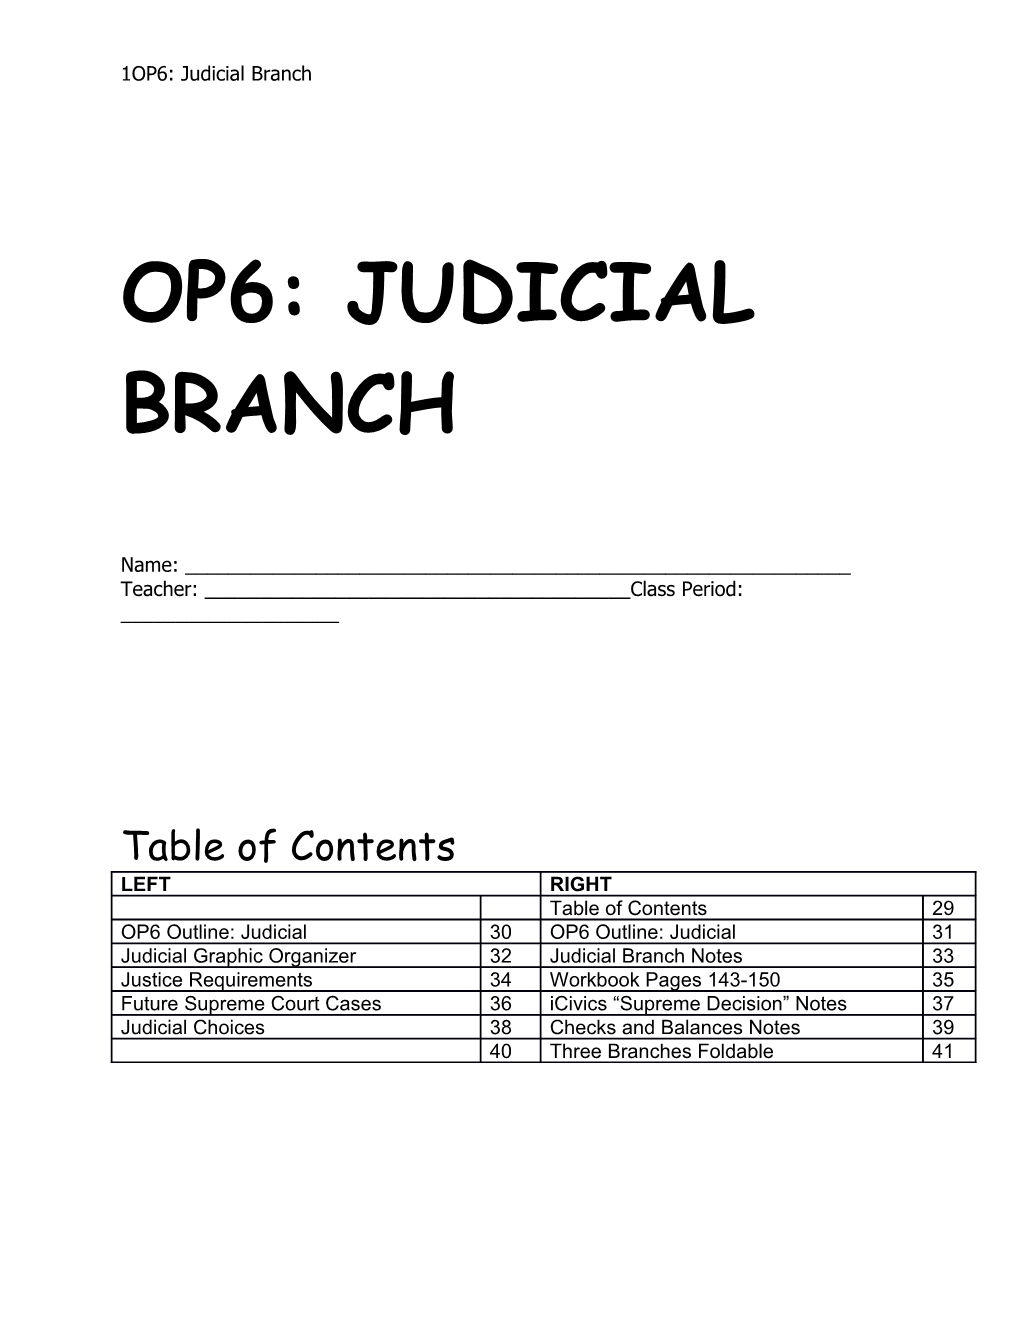 Op6: Judicial Branch